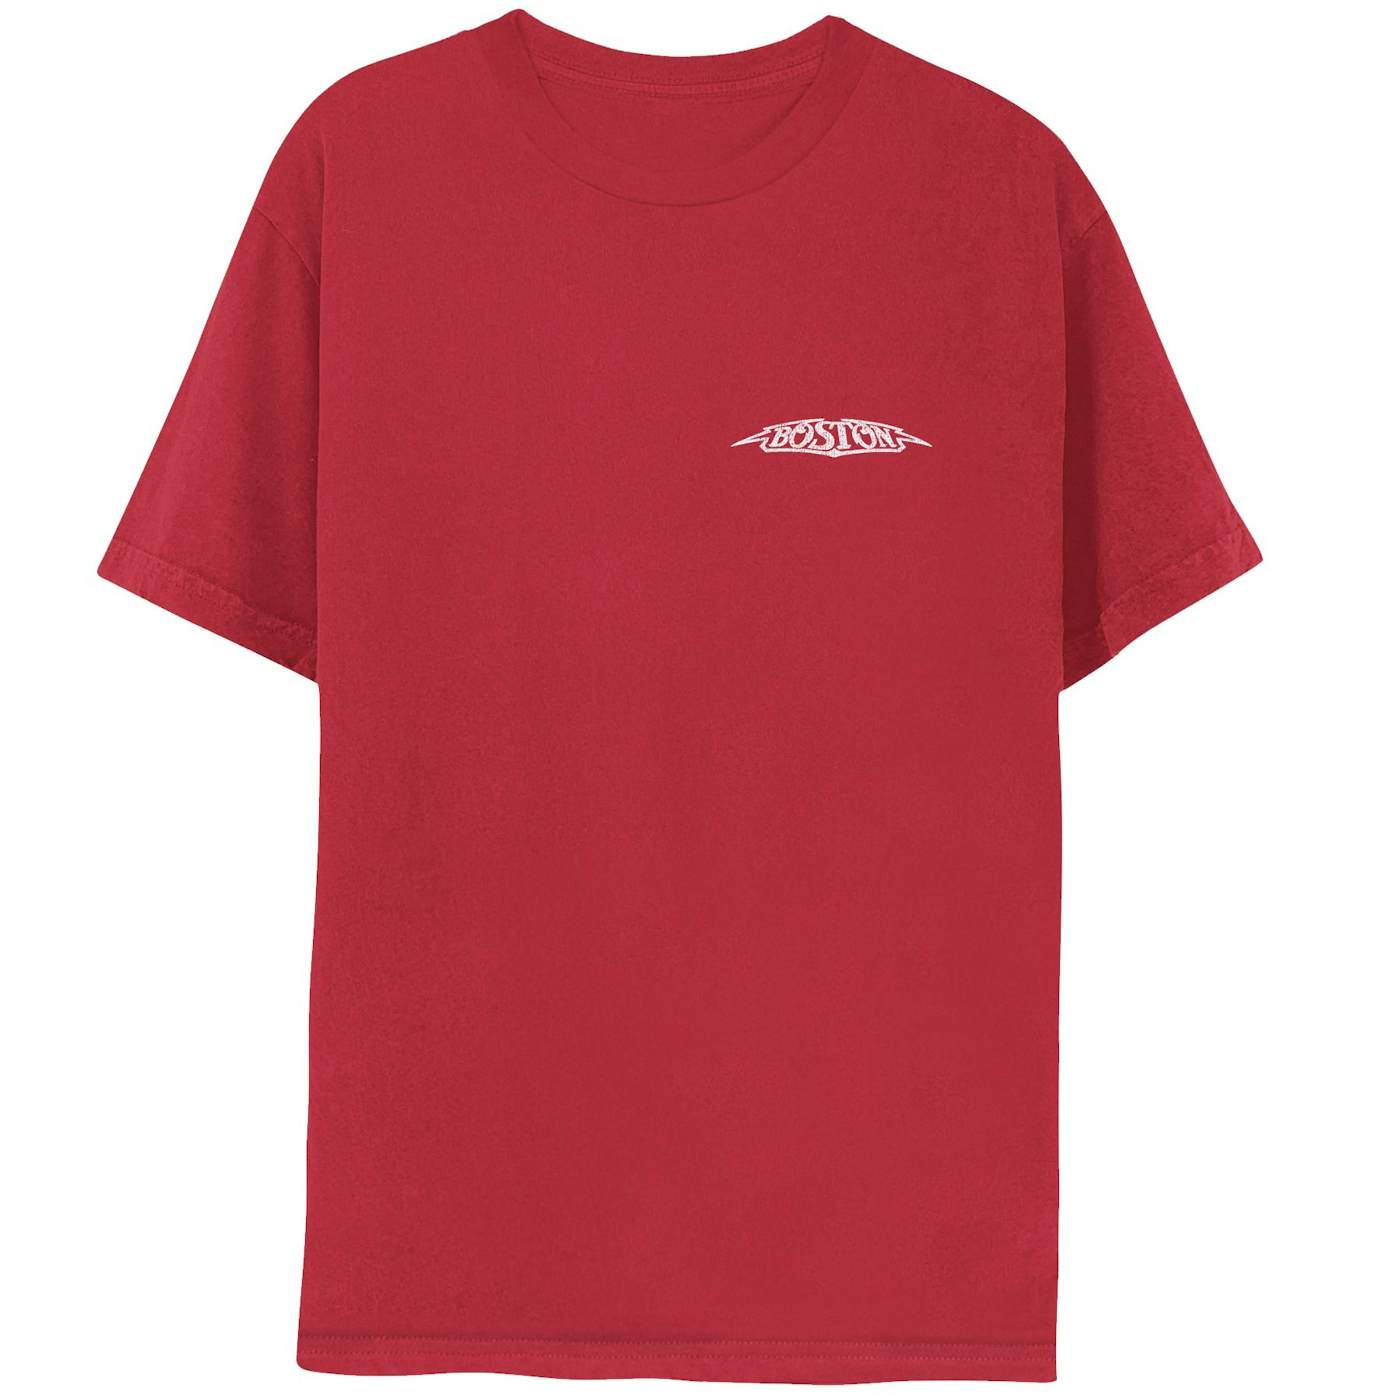 Mr. Sox Fashion Vintage Tshirt T Shirts Boston Massachusetts Red